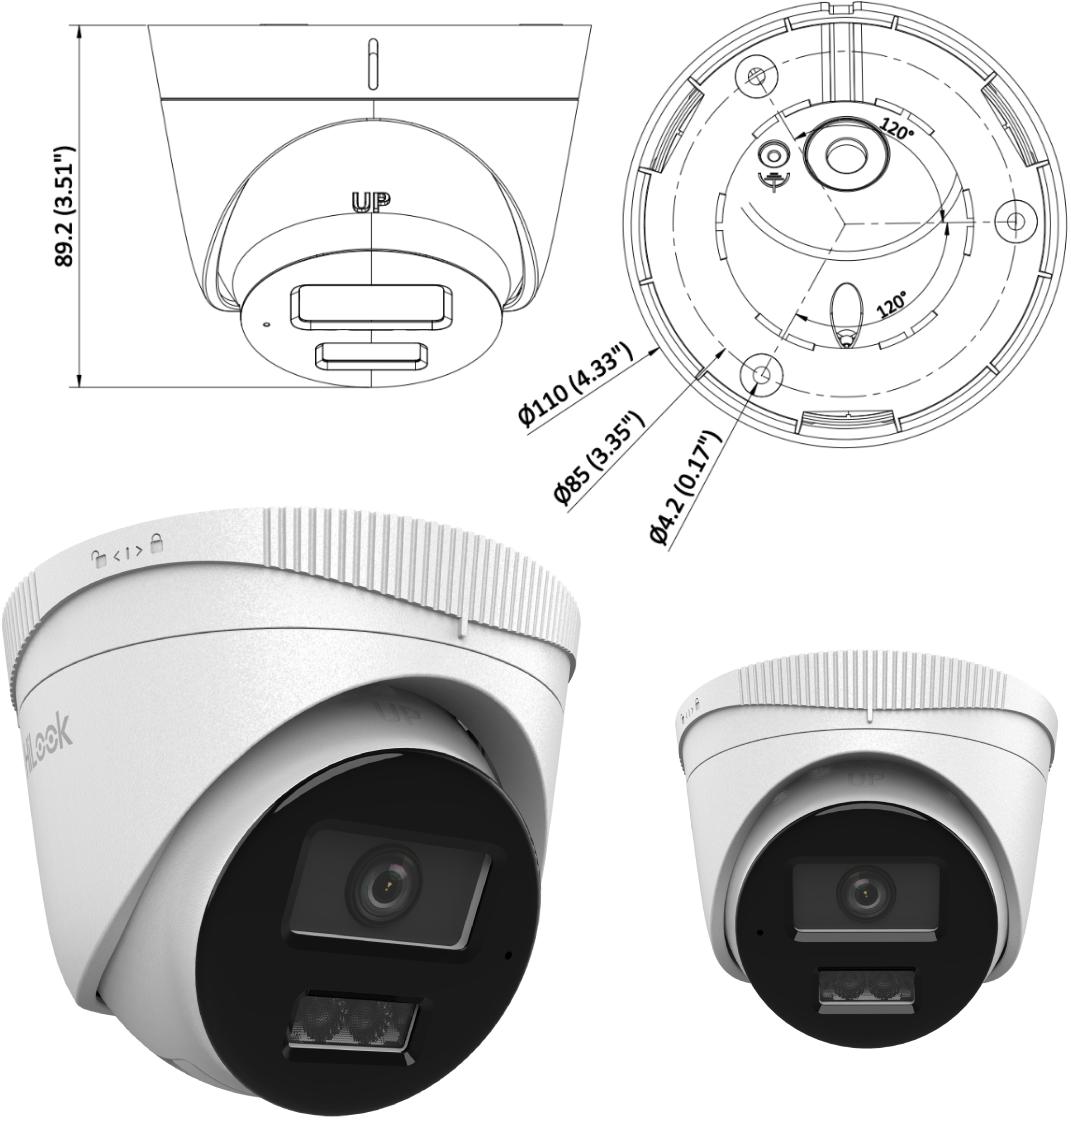 Kamera IP Hilook turret 4MP IPCAM-T4-30DL 2.8mm - wymiary: